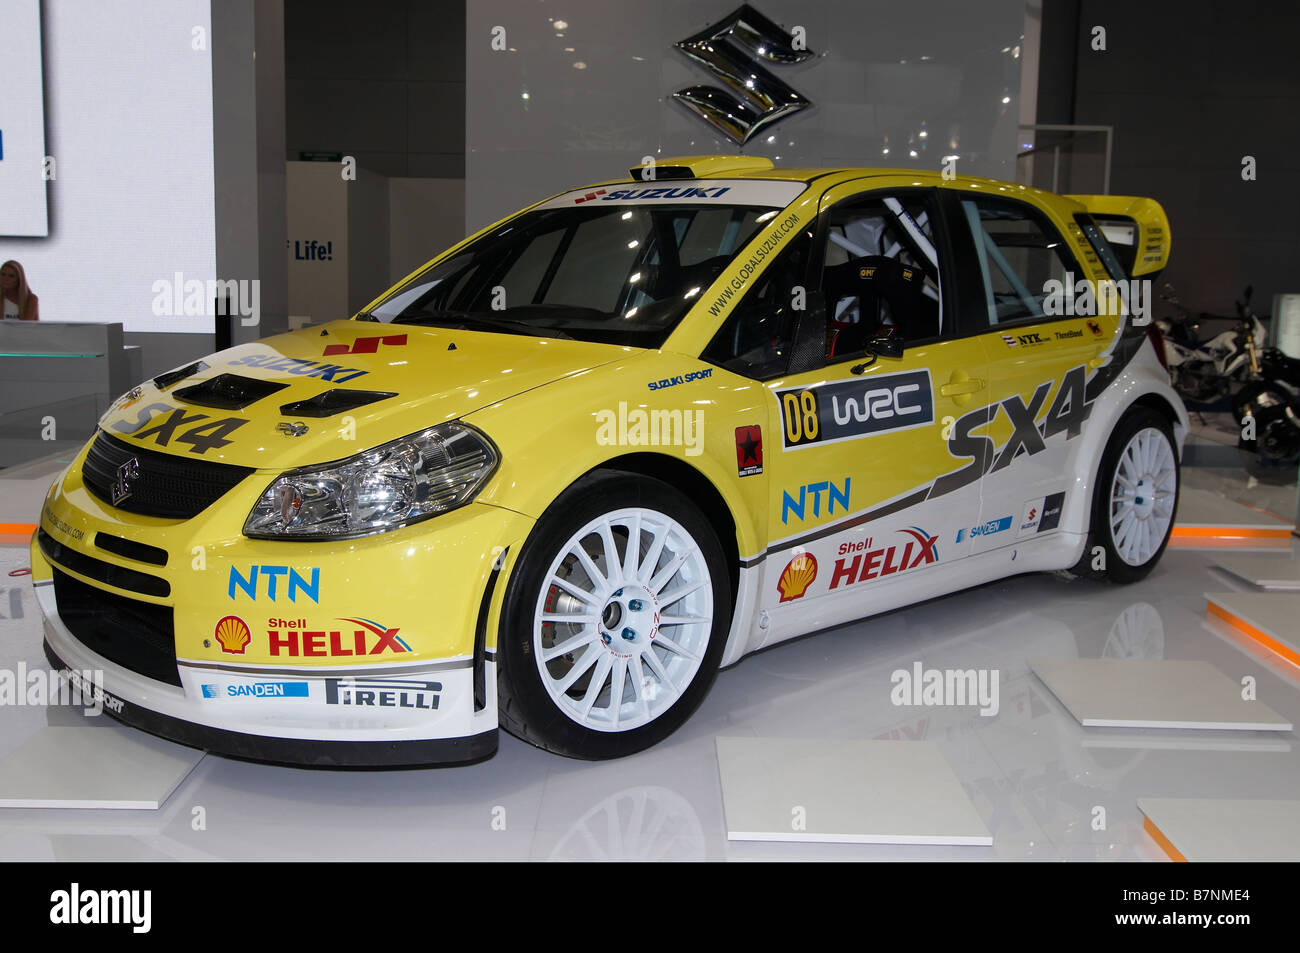 Suzuki SX4 WRC : la phase 4 de l'équipe de sport automobile. Salon Automobile International de Moscou' 2008 Banque D'Images